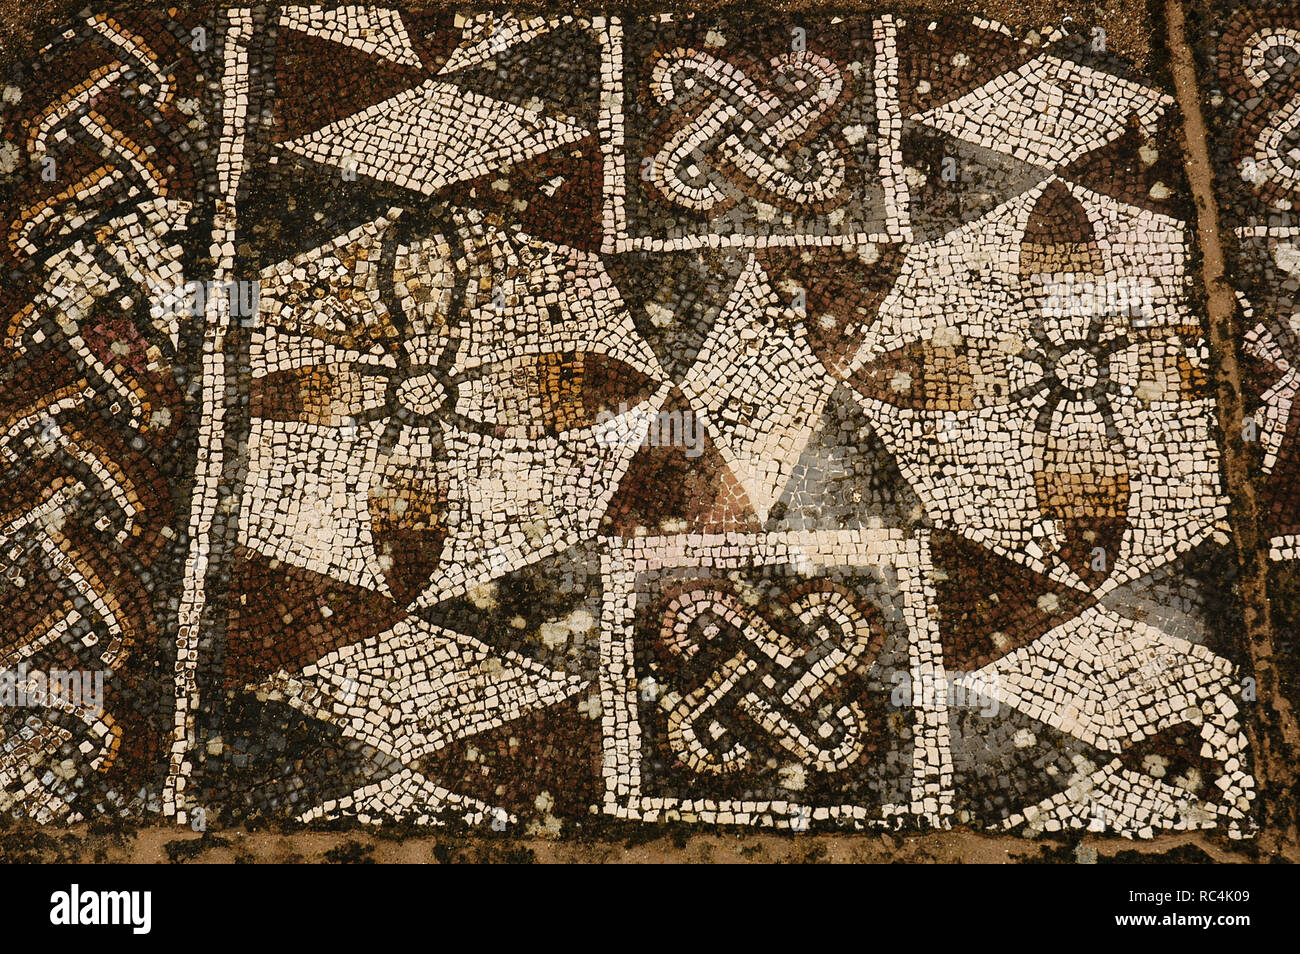 Villa romana di Pisoes. Pavimento a mosaico raffiguranti motivi geometrici. Il Portogallo. L'Alentejo. Beja. Foto Stock